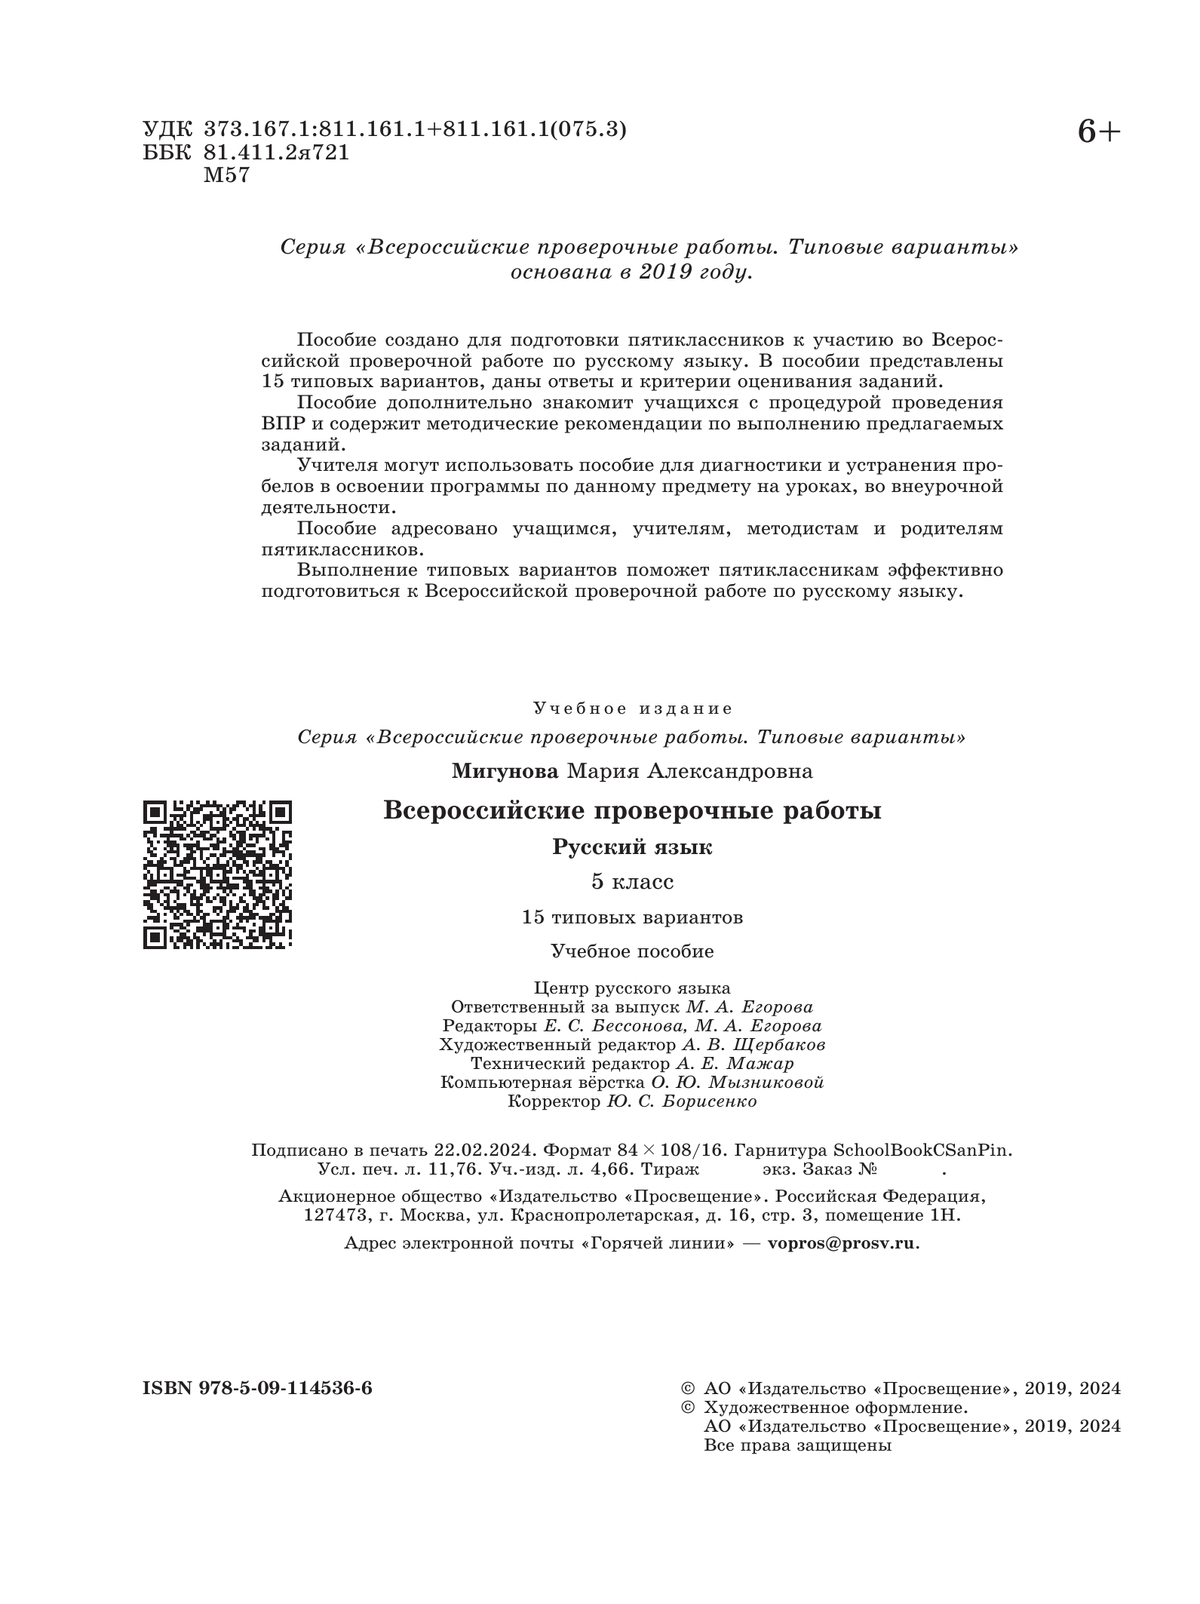 Всероссийские проверочные работы. Русский язык.15 вариантов. 5 класс 4